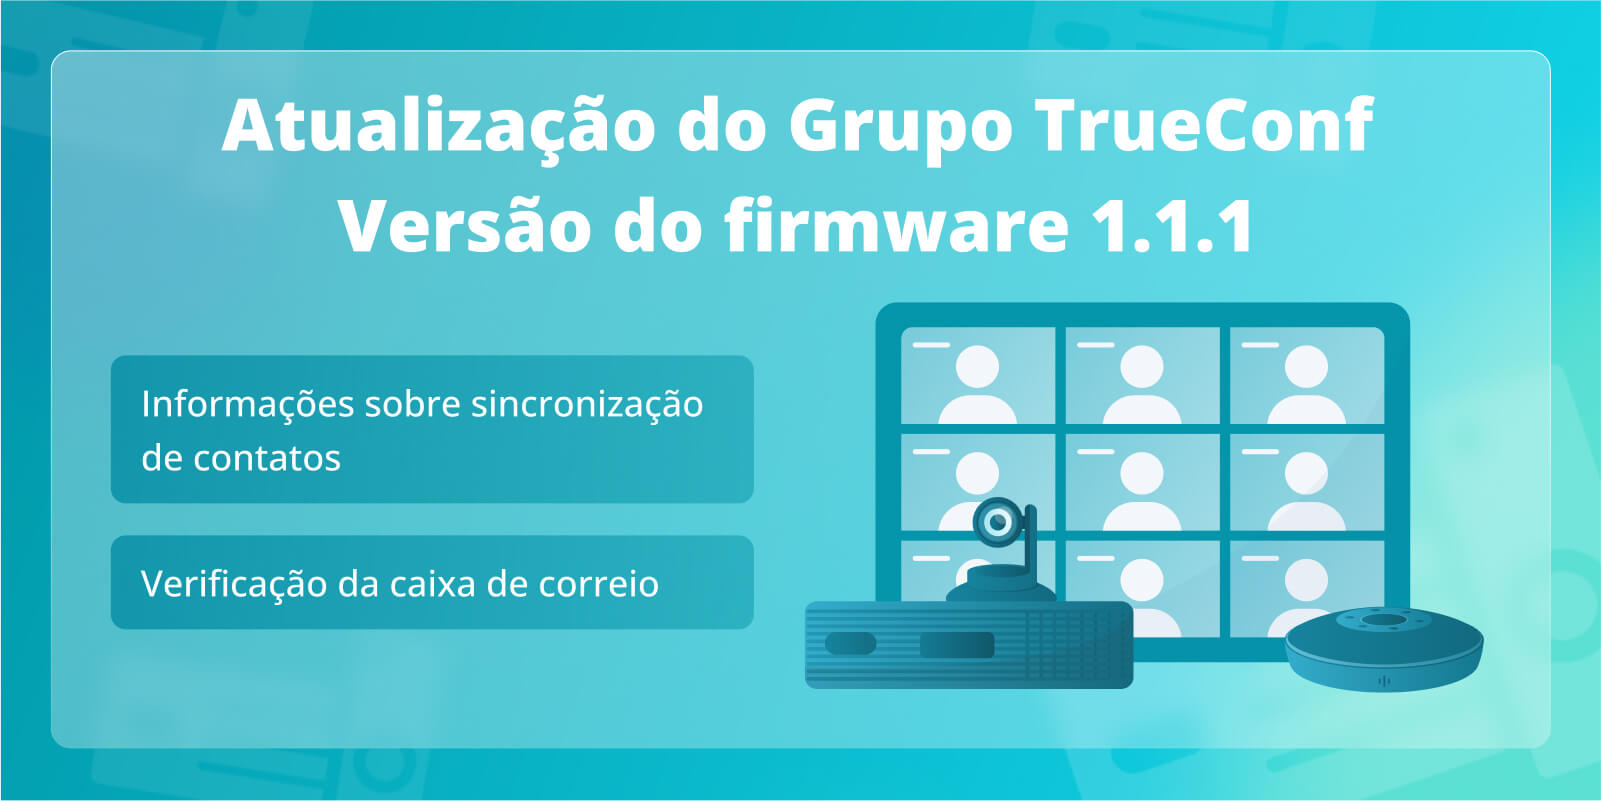 TrueConf Group 1.1.1: Verificação da caixa de correio e informações sobre sincronização de contatos com TrueConf Server e TrueConf MCU 1